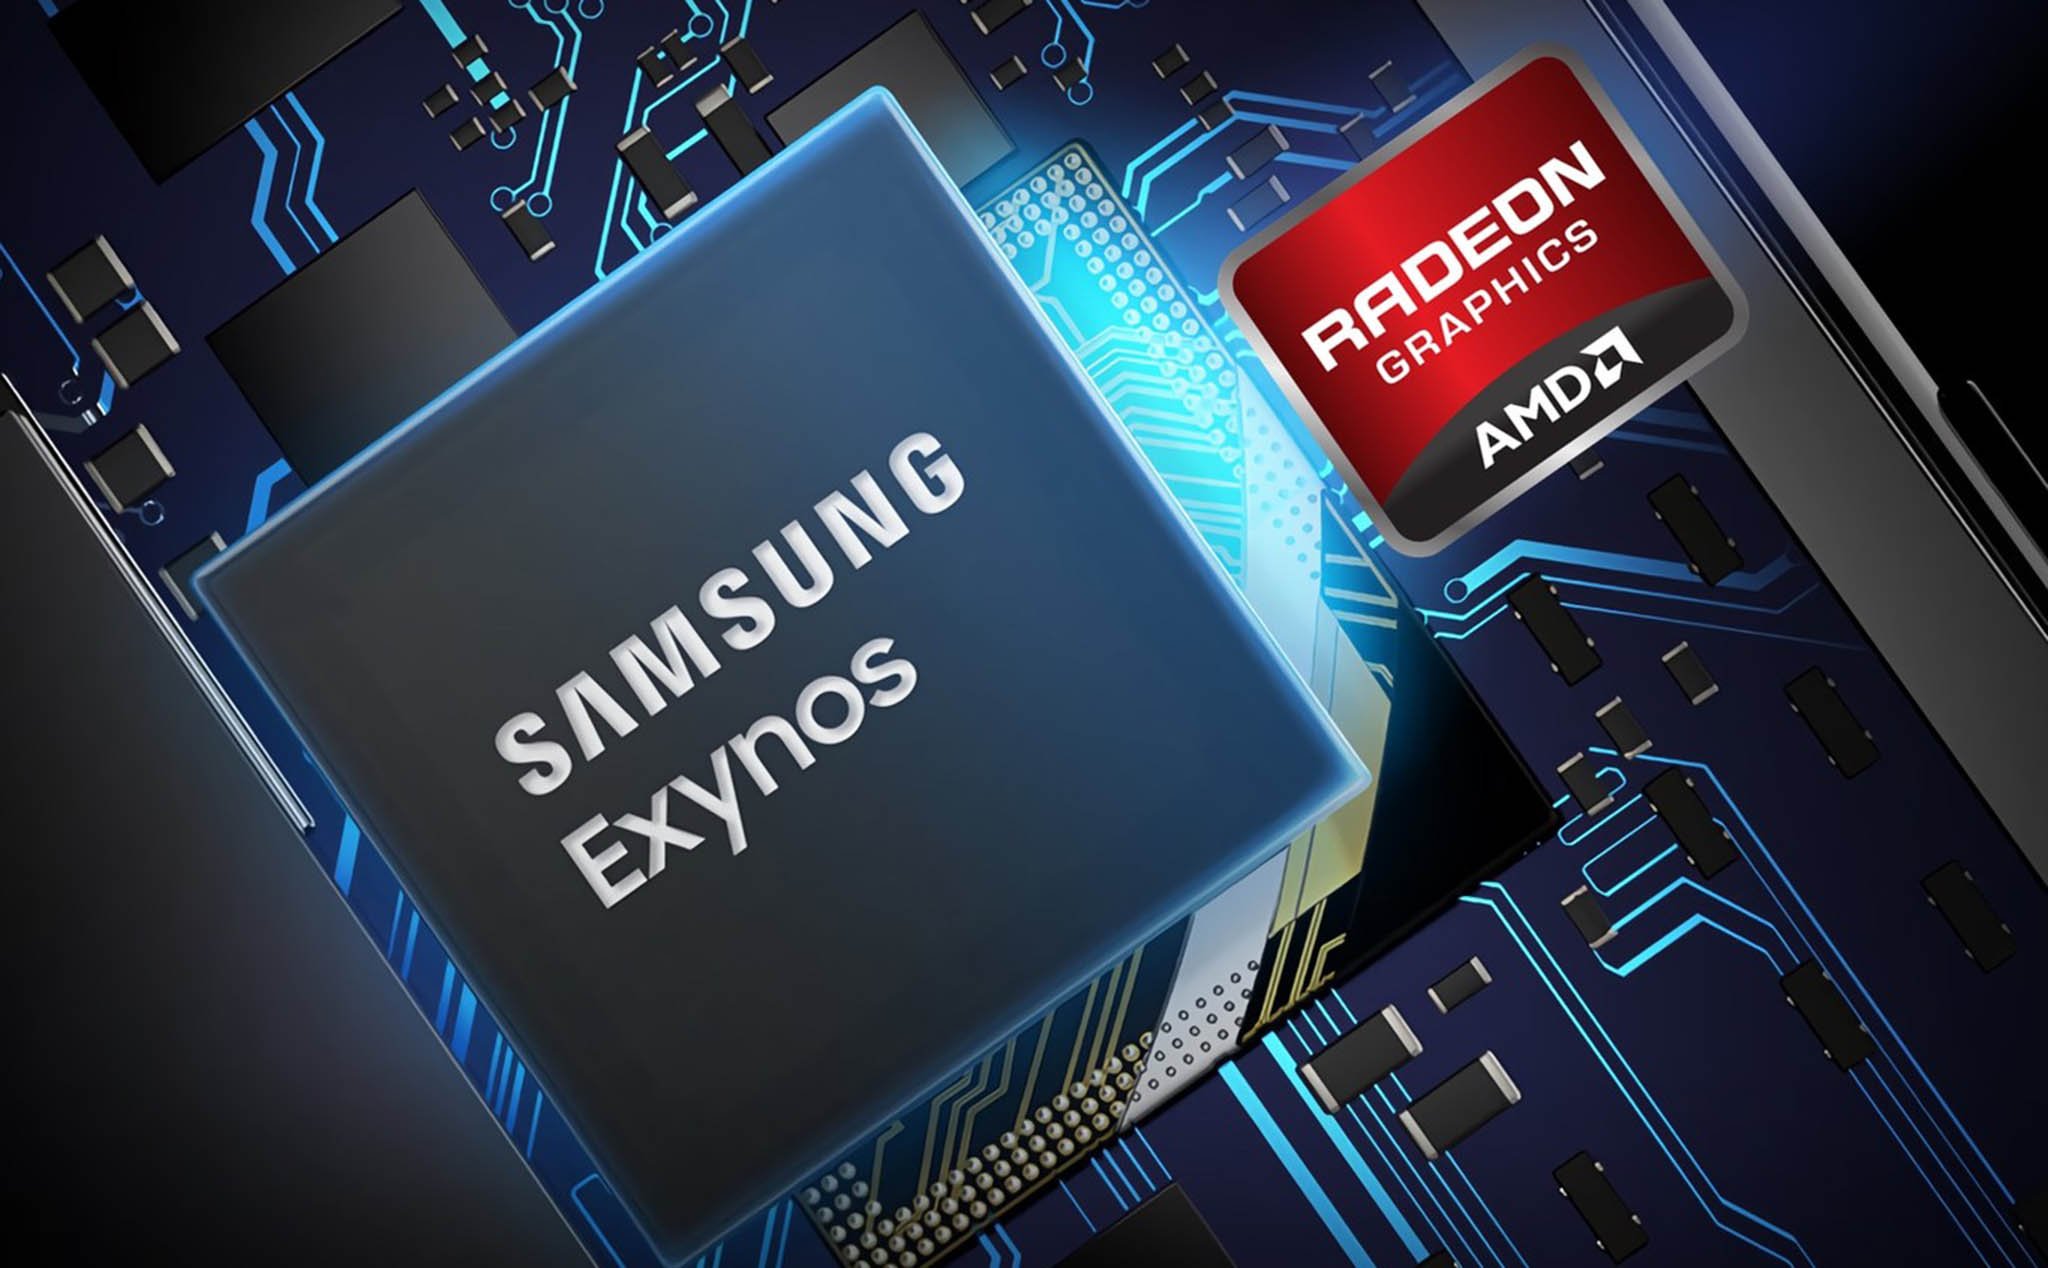 3.Samsung_Exynos_AMD_GPU.jpg